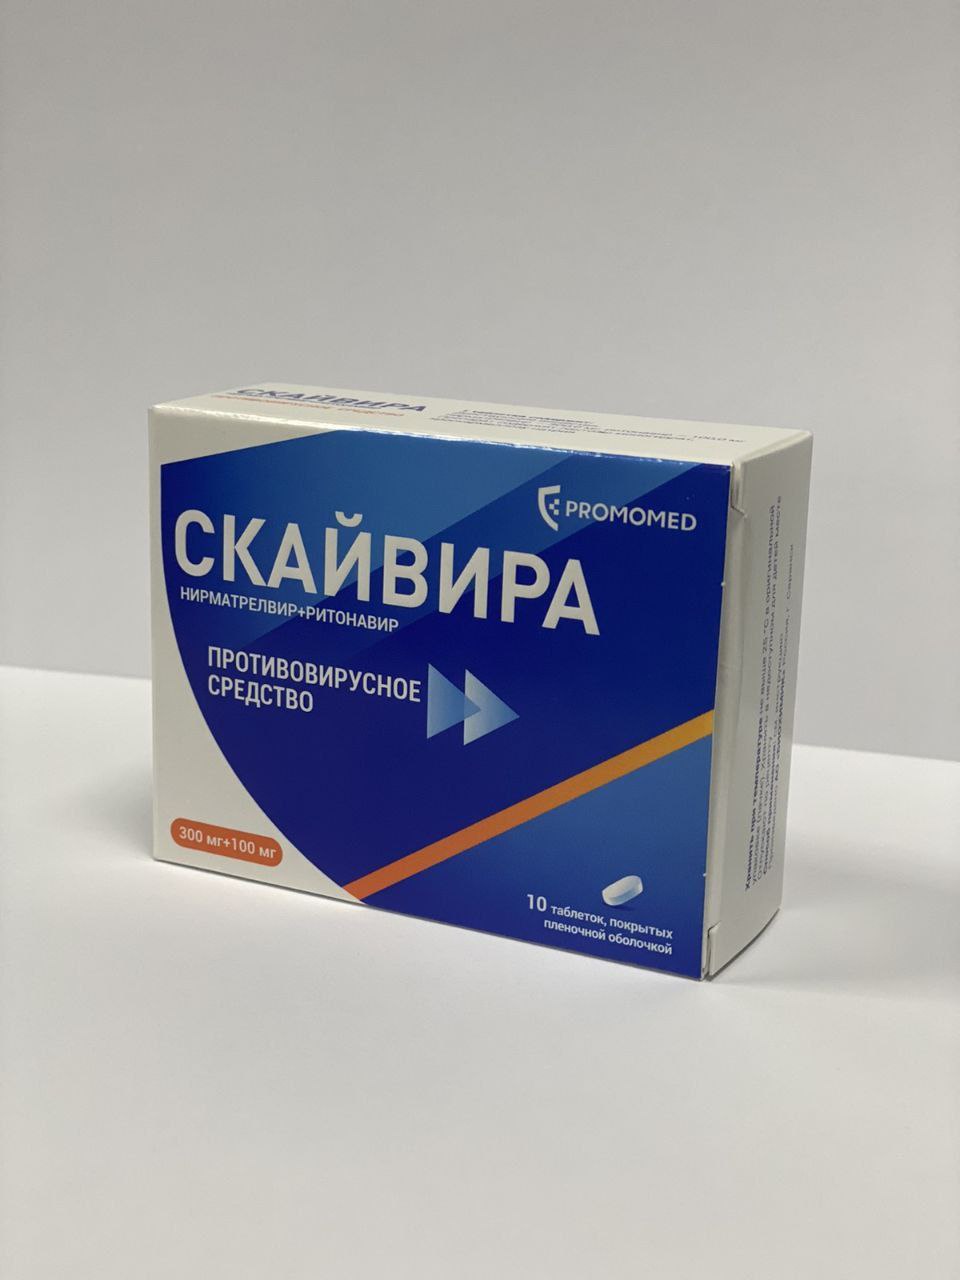 В белорусских аптеках появились российские таблетки для лечения коронавируса